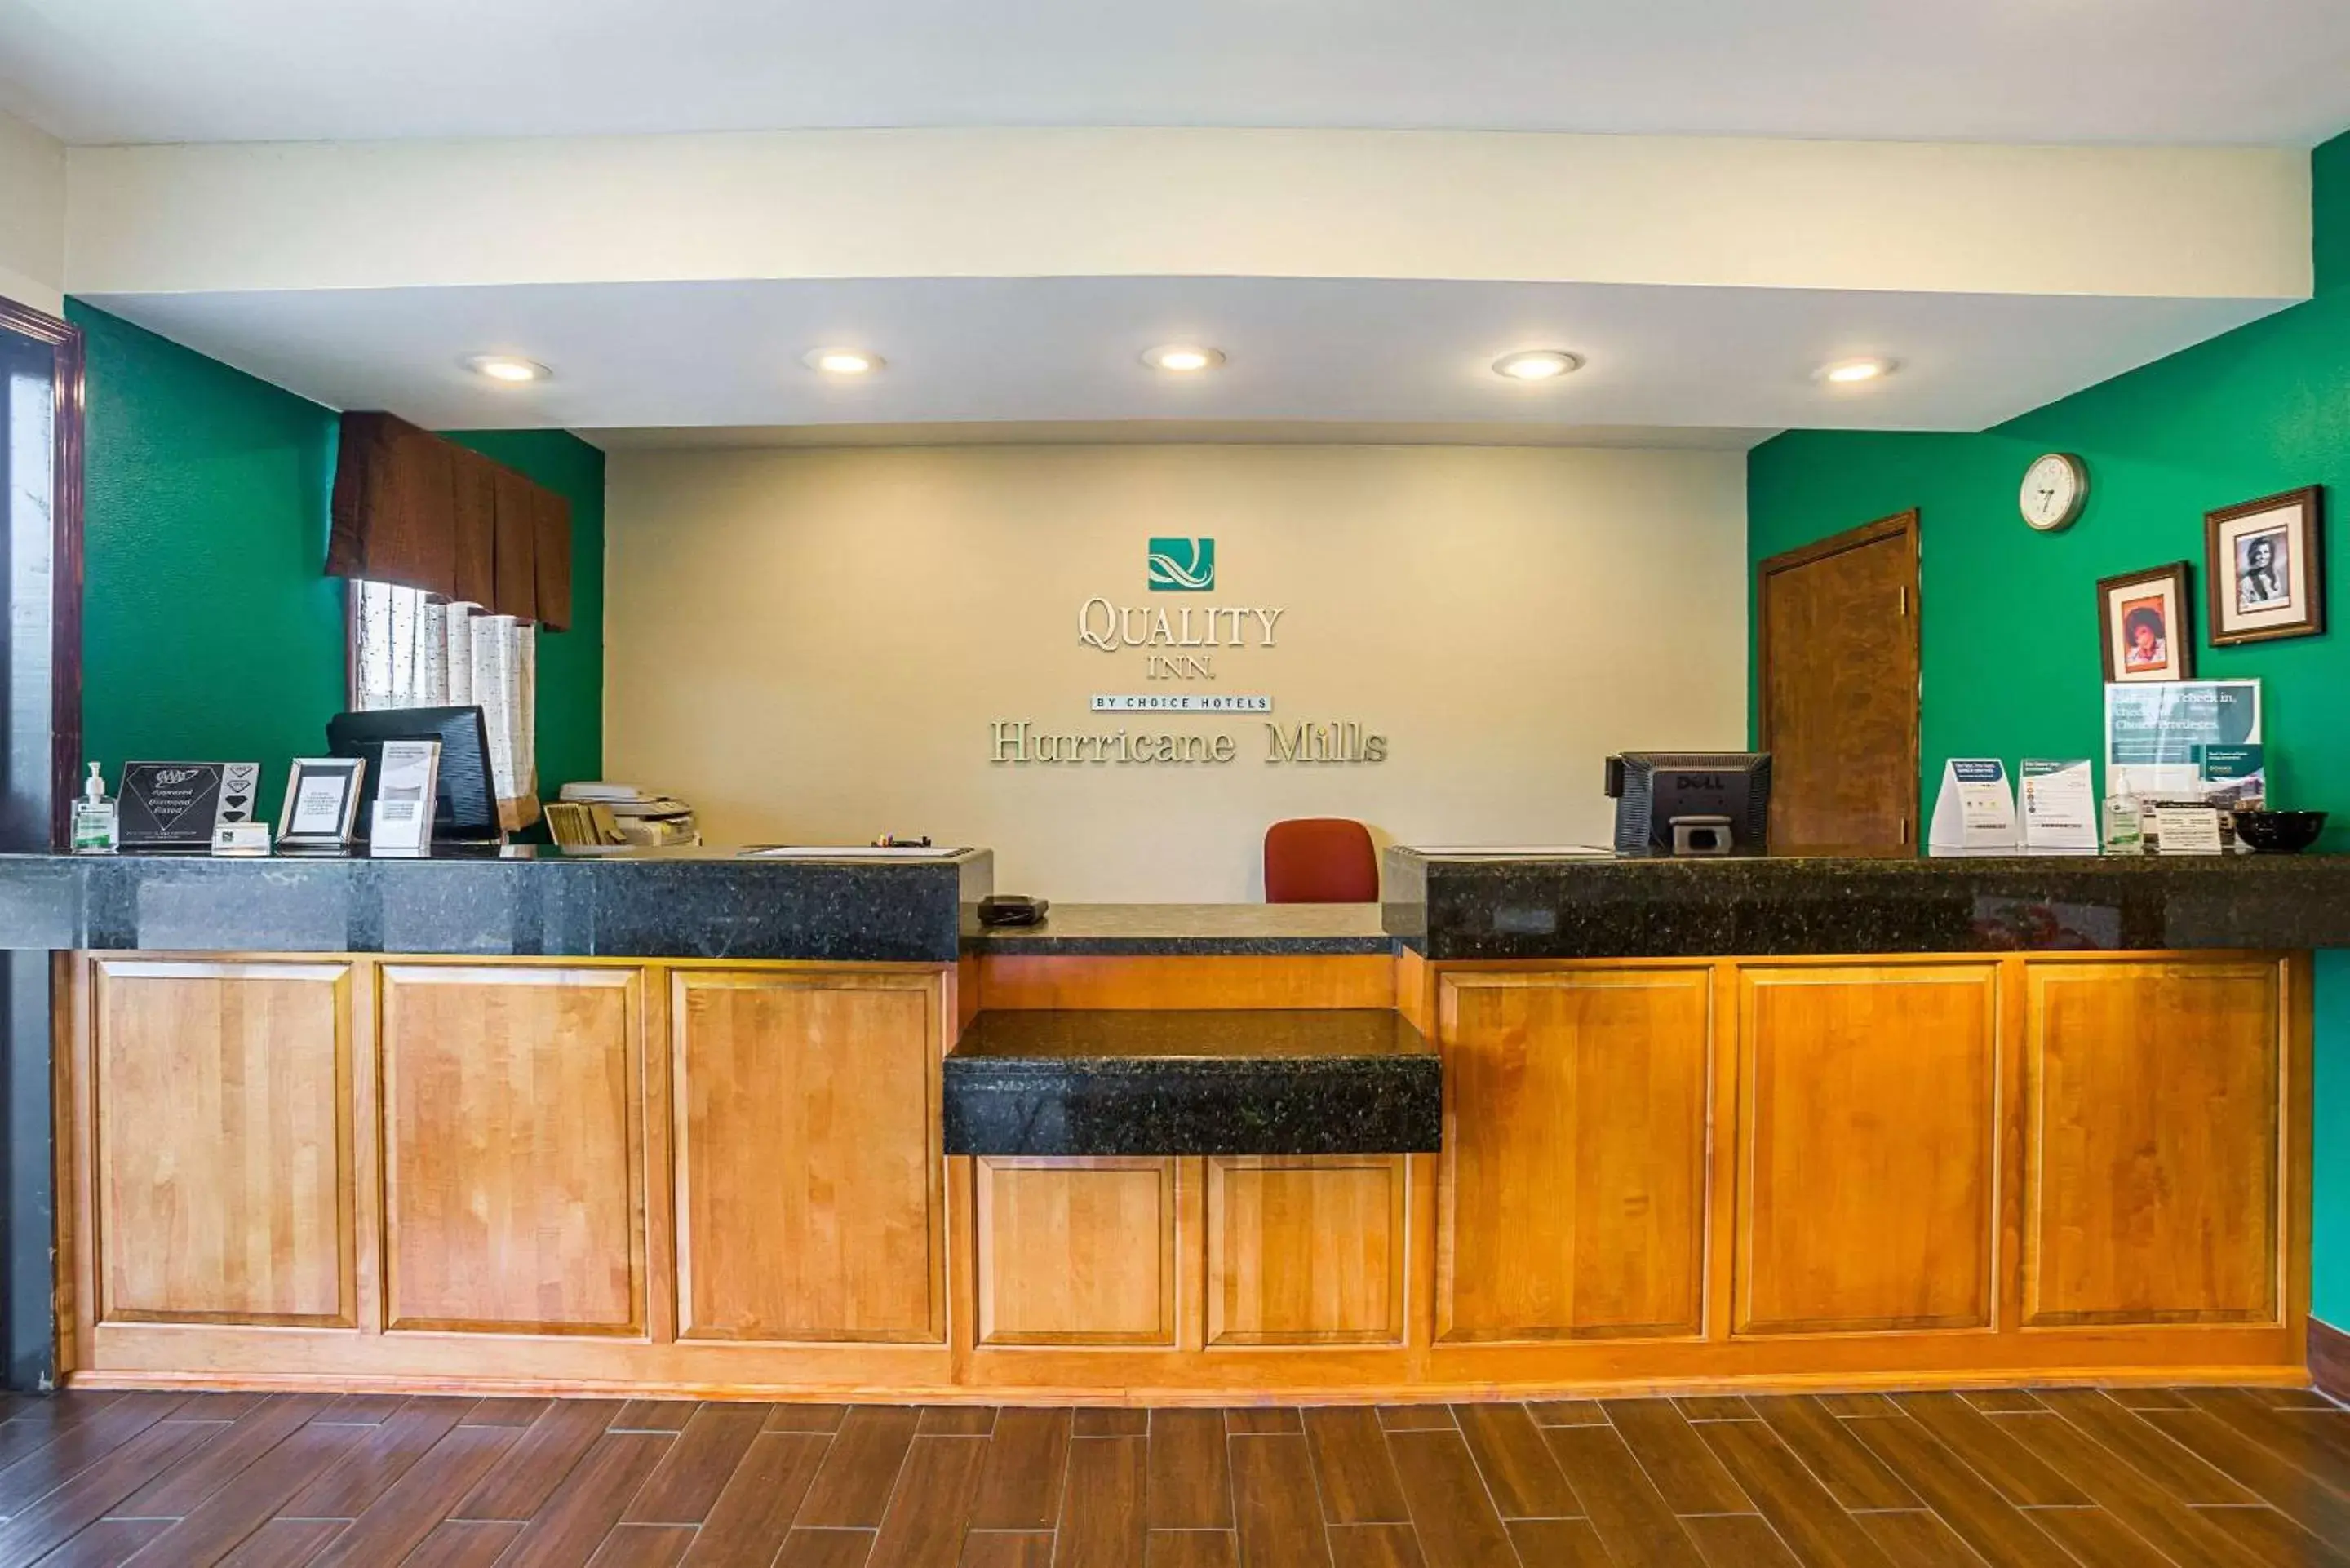 Lobby or reception, Lobby/Reception in Quality Inn Hurricane Mills